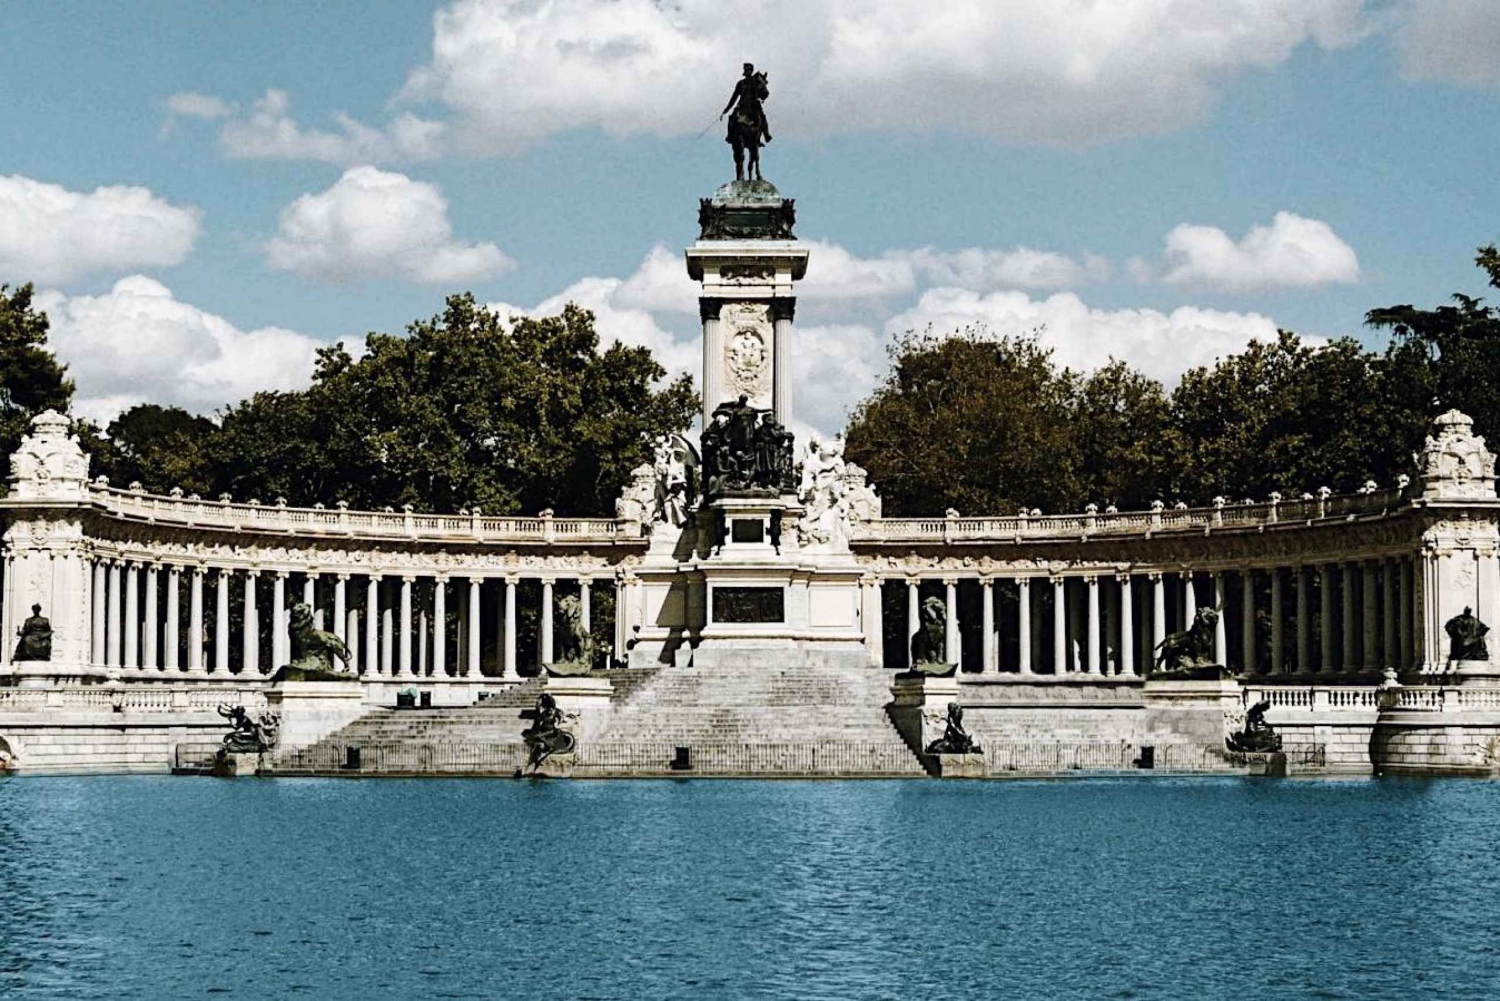 Madrid: tour guiado a pie de 2,5 horas del centro histórico